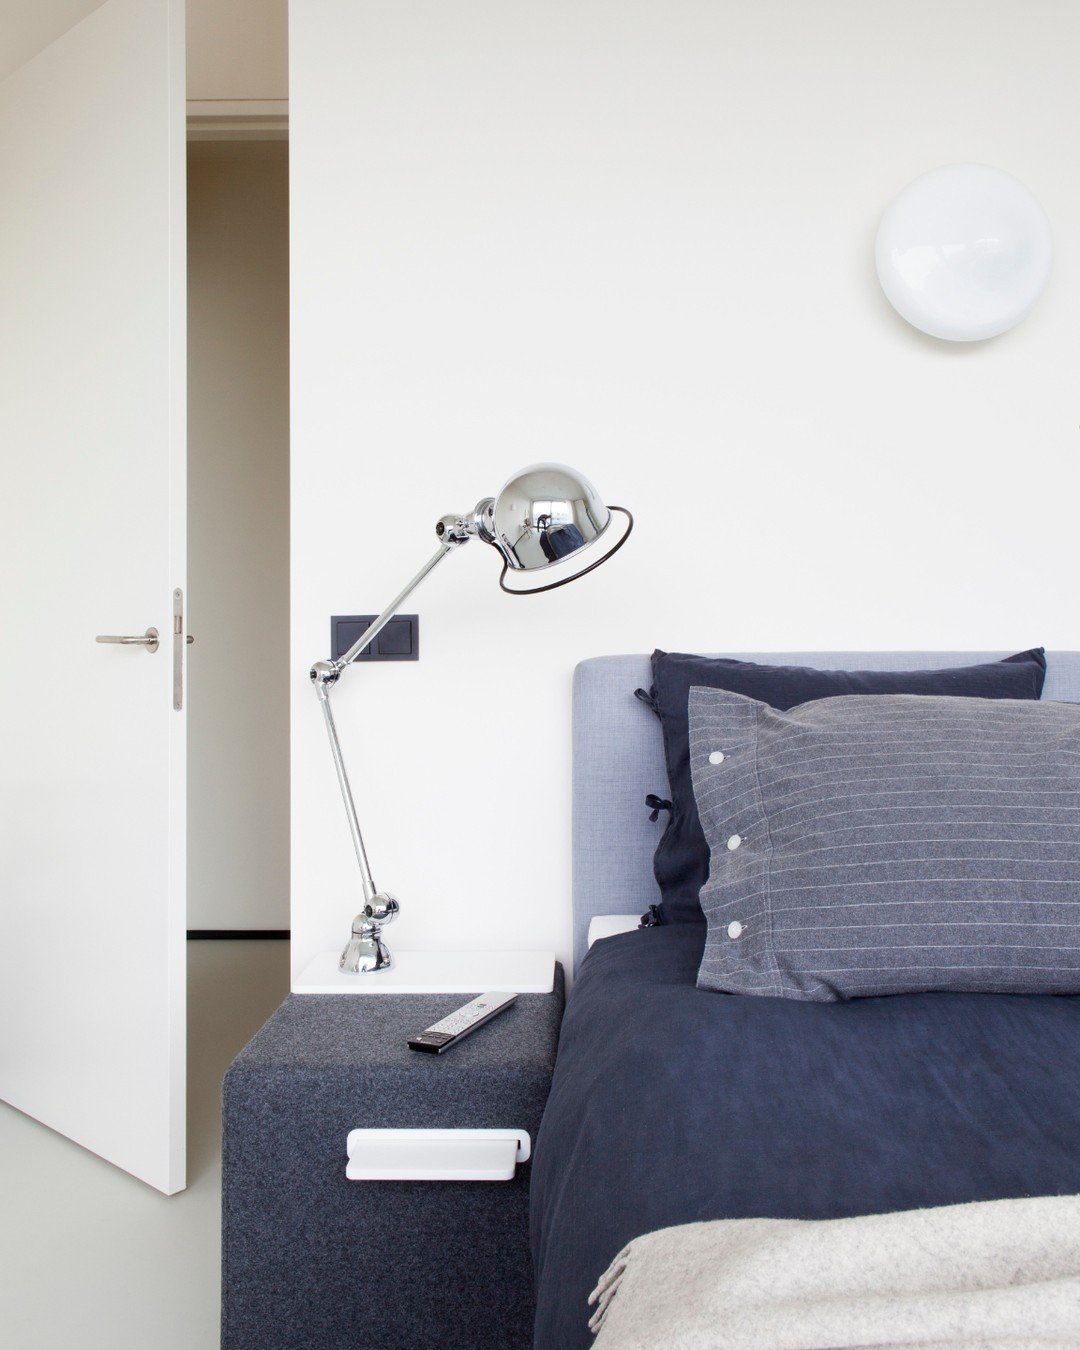 Een slaapkamer met minimalistische look legt de focus op rust met de overzichtelijke look en feel. Elk element is met zorg bedacht en geplaatst om zo comfort te stimuleren, waarbij de verfijnde omgeving je in een ontspannen staat brengt. 

Fotografie